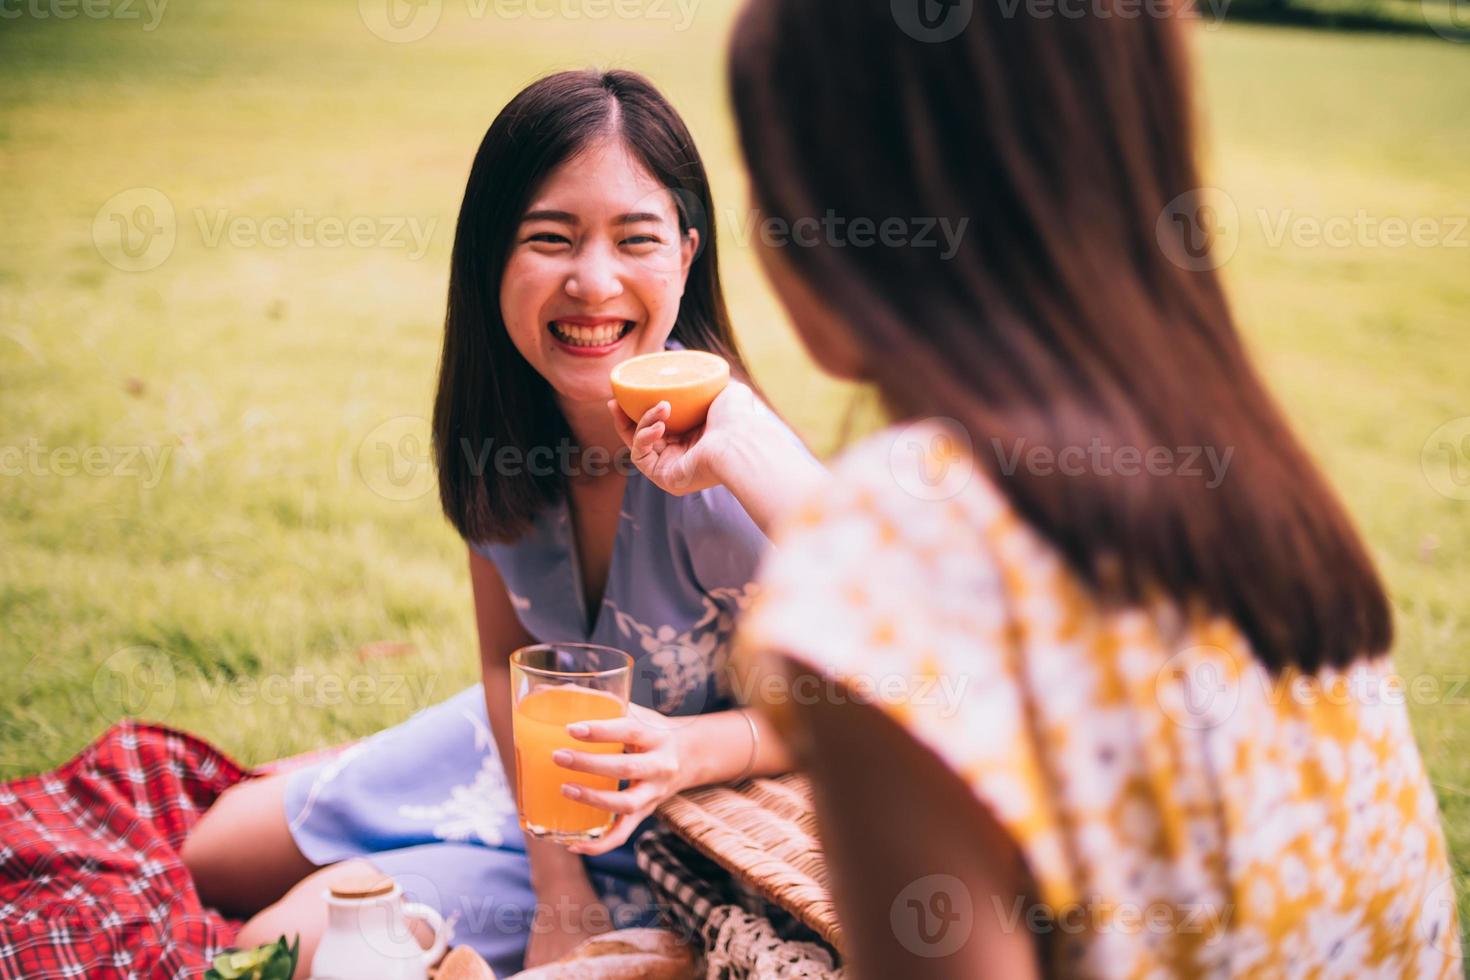 dos amigas disfrutando de un picnic juntas en un parque. foto